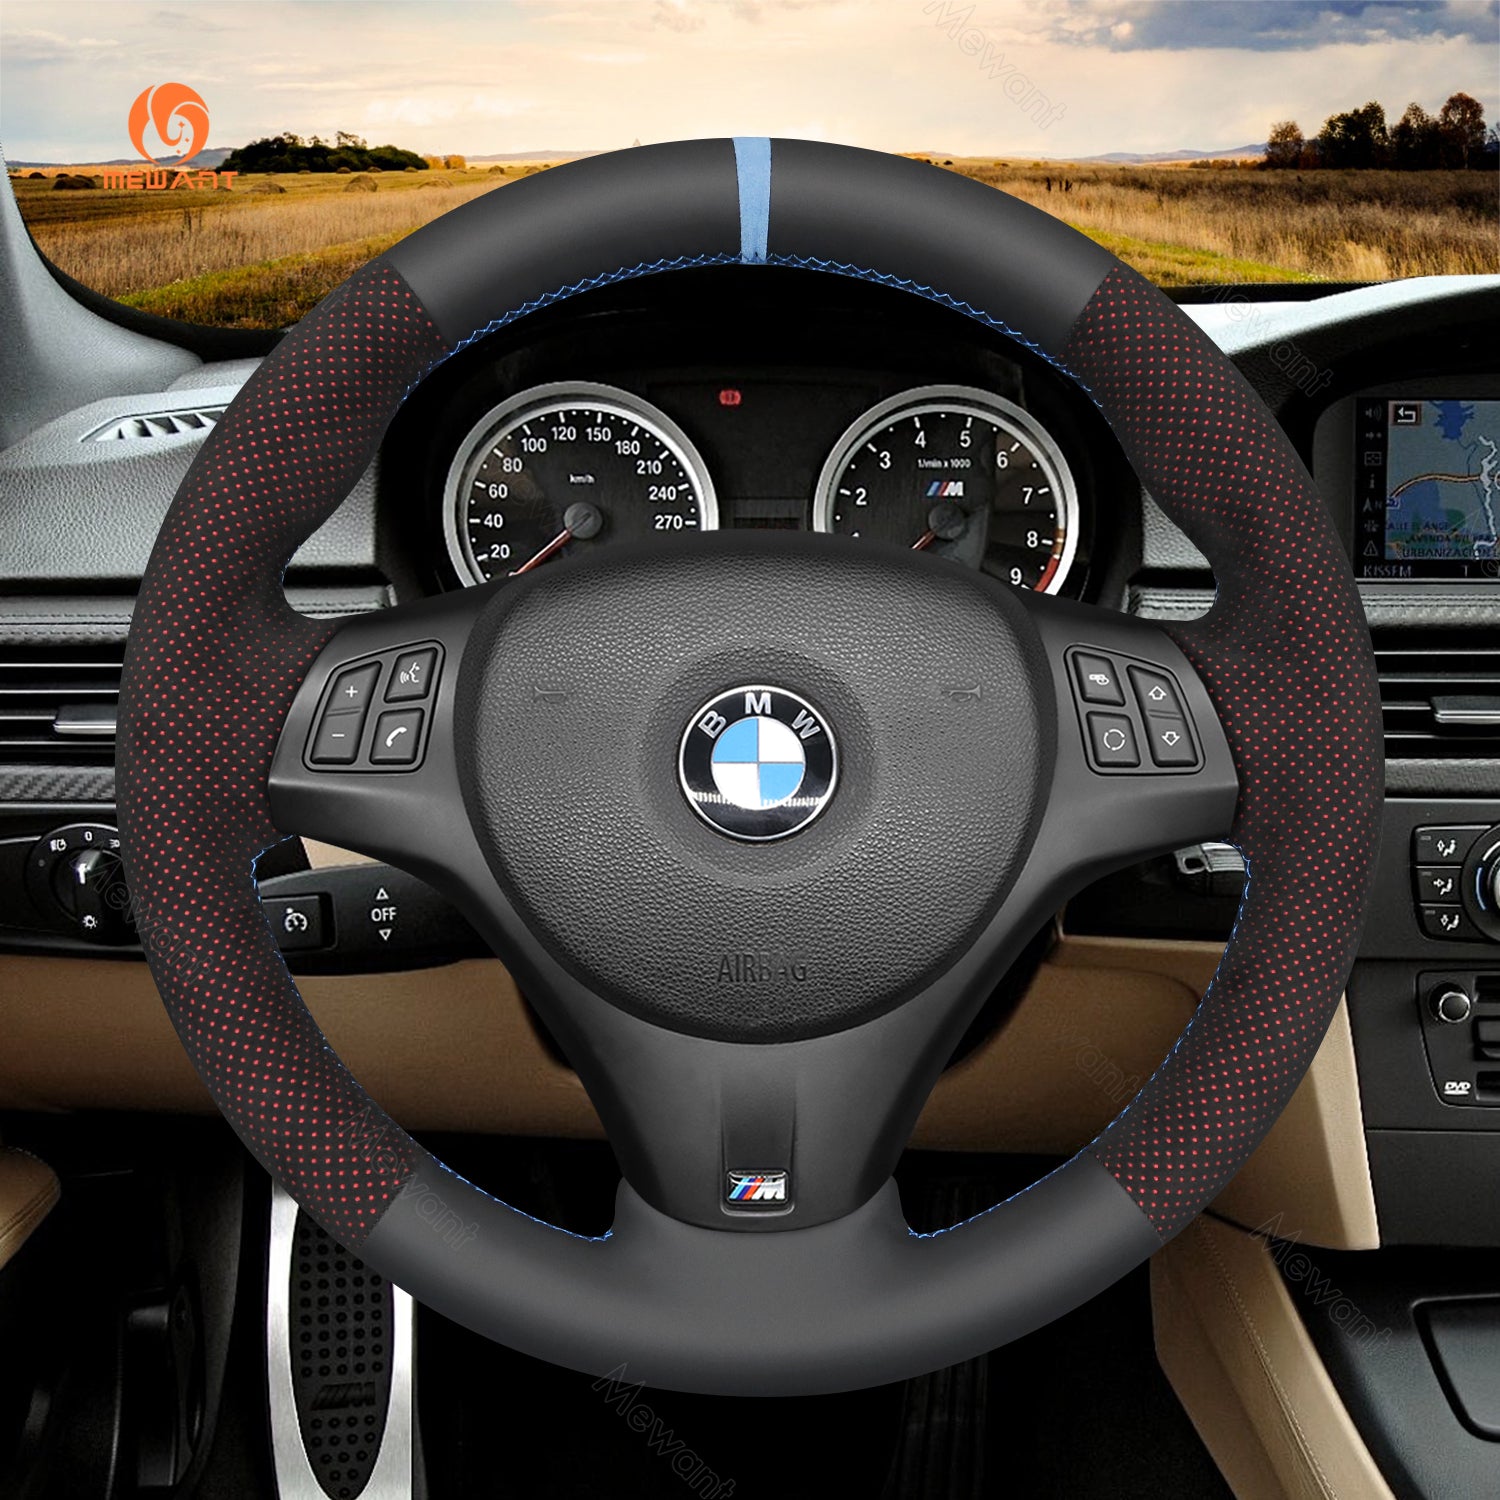 Simplemente lee de fibra de carbono Alcantara protector para volante de coche para BMW M Sport M3 E90 E91 E92 E93 / E87 E81 E82 E88 / X1 E84 / M3 E90 E92 E93